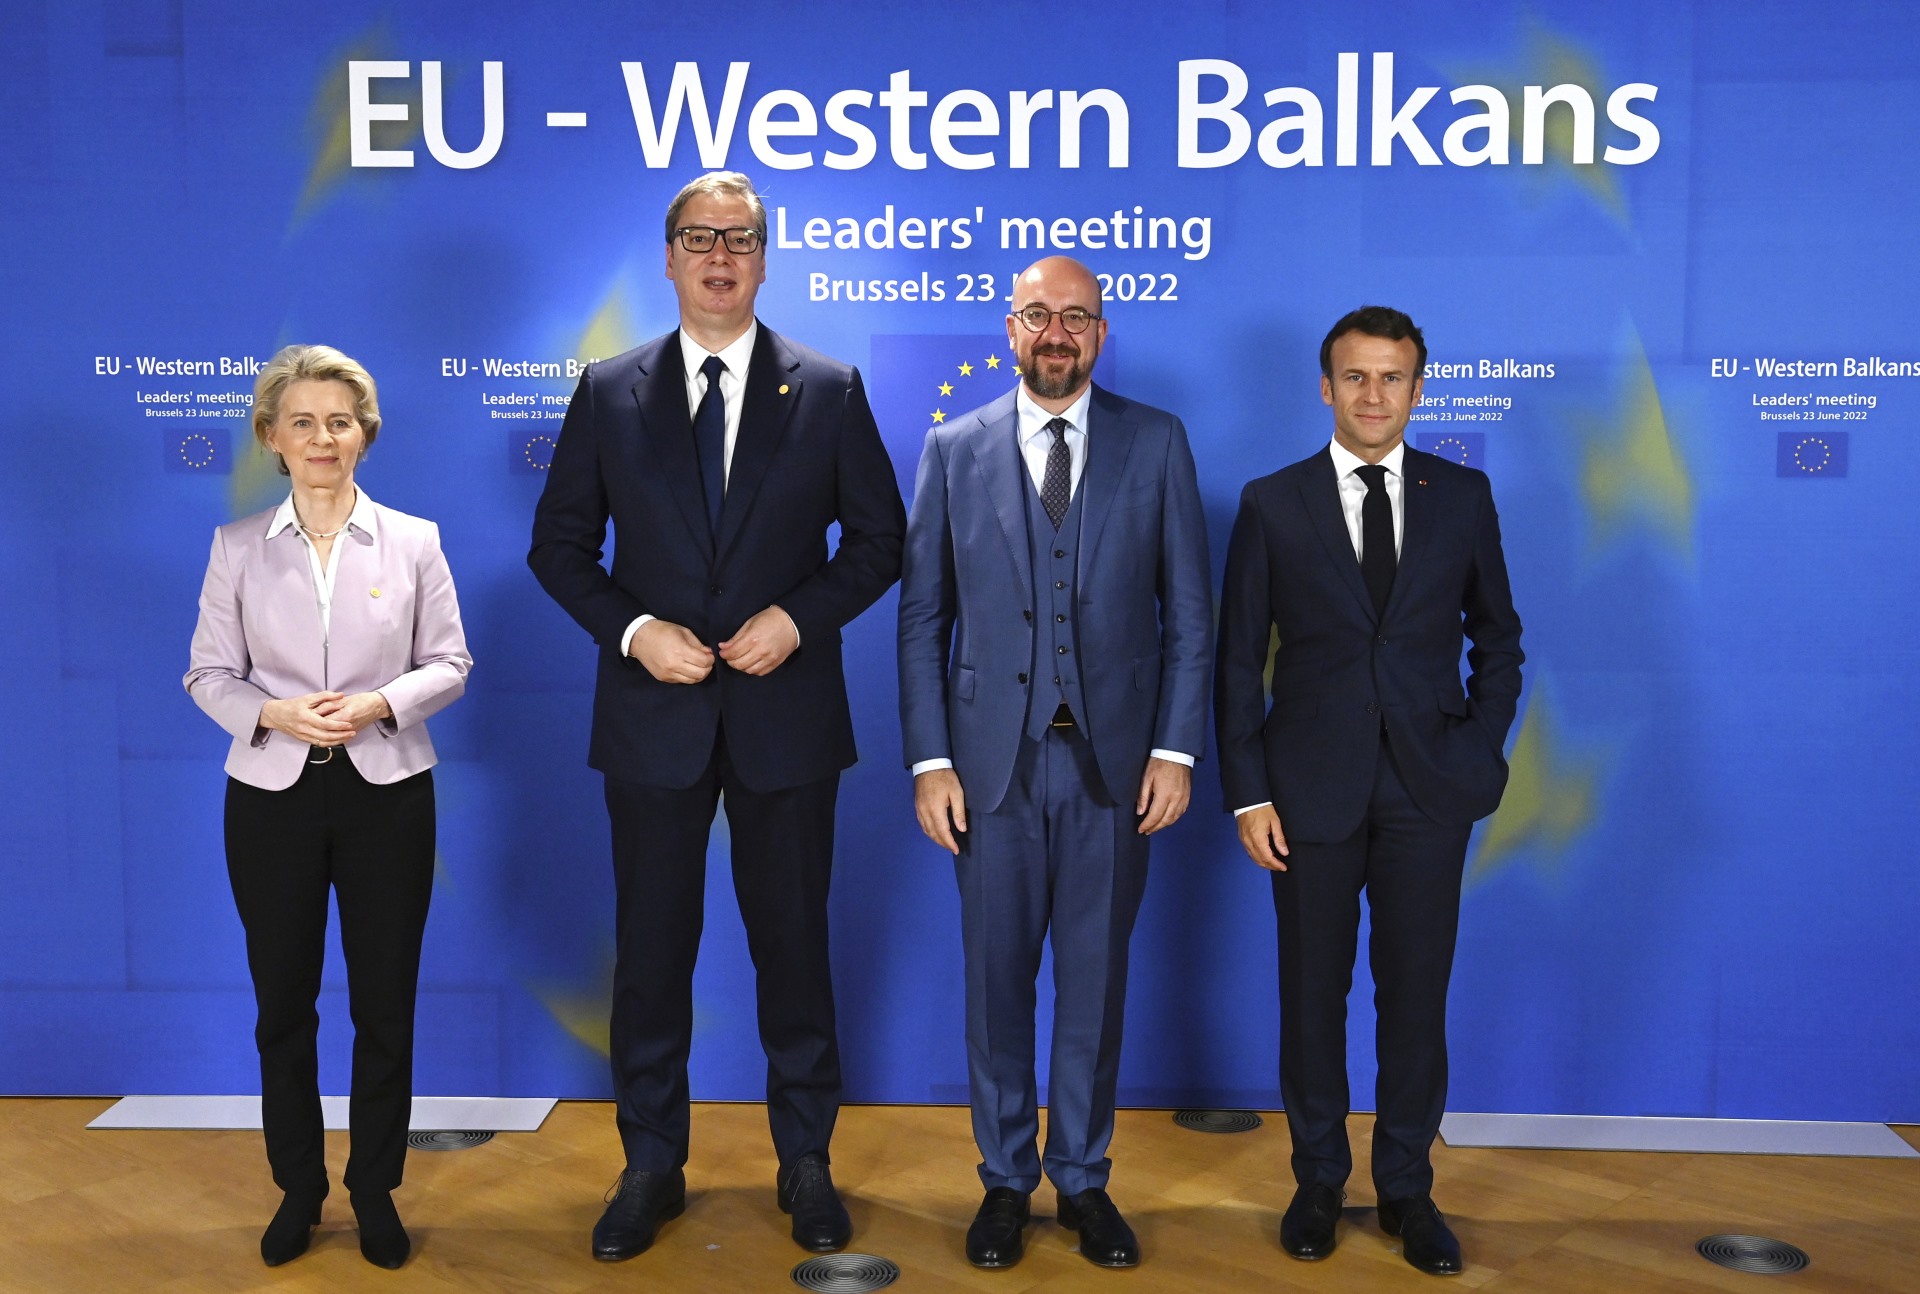 Председник Републике Србије Александар Вучић изјавио је у Бриселу, долазећи на Самит ЕУ-Западни Балкан, да је дошао да разговара са европским пријатељима о будућности Србије и региона.